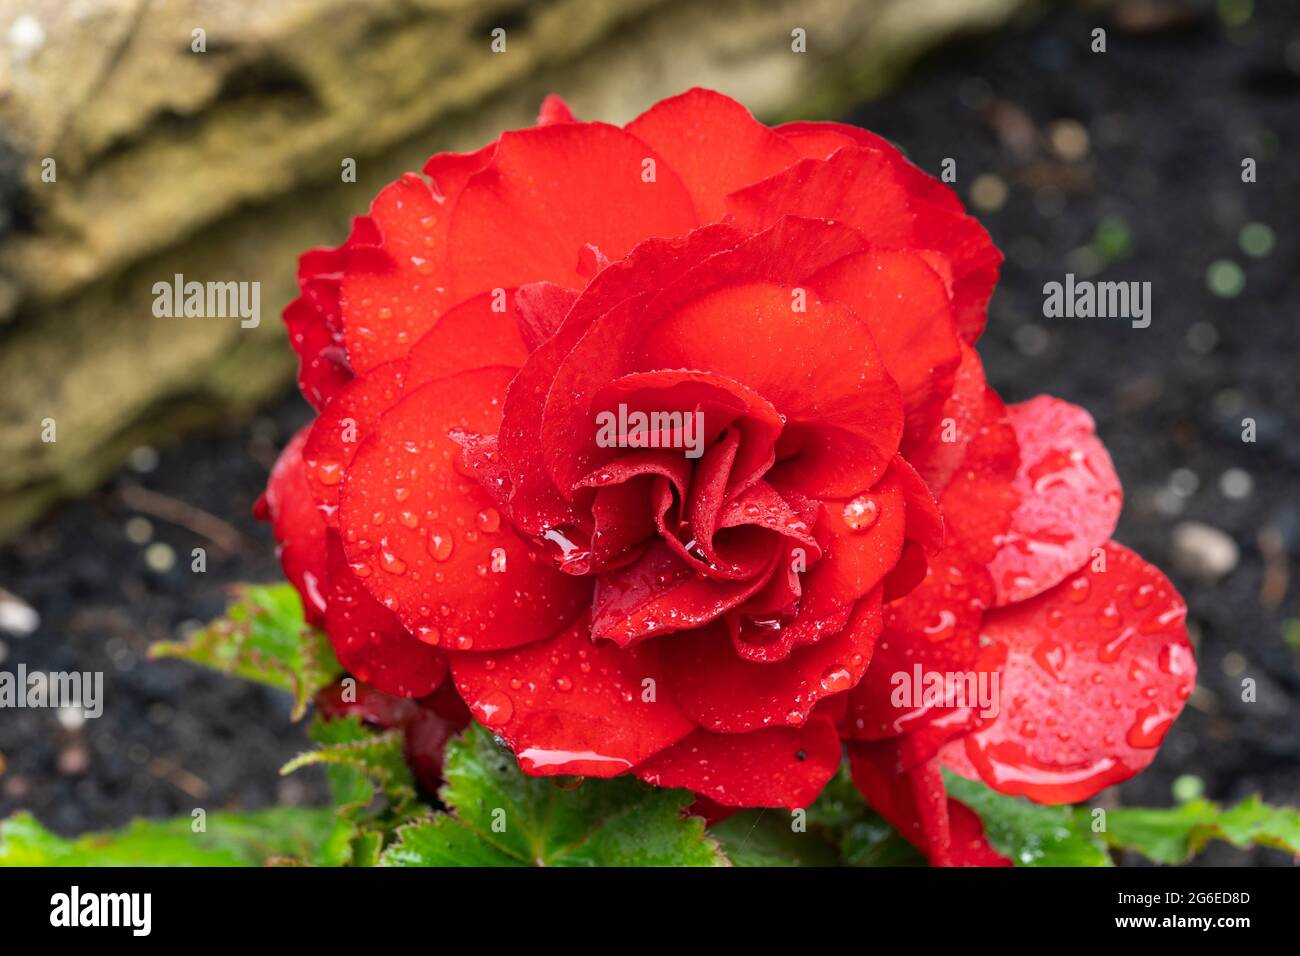 Begonia Nonstop F1 rouge (Tuberhybrida Begonia, Begonia Tuberhybrida) fleurit en juillet dans un jardin avec des fleurs doubles rouge écarlate et des gouttes de pluie. ROYAUME-UNI Banque D'Images